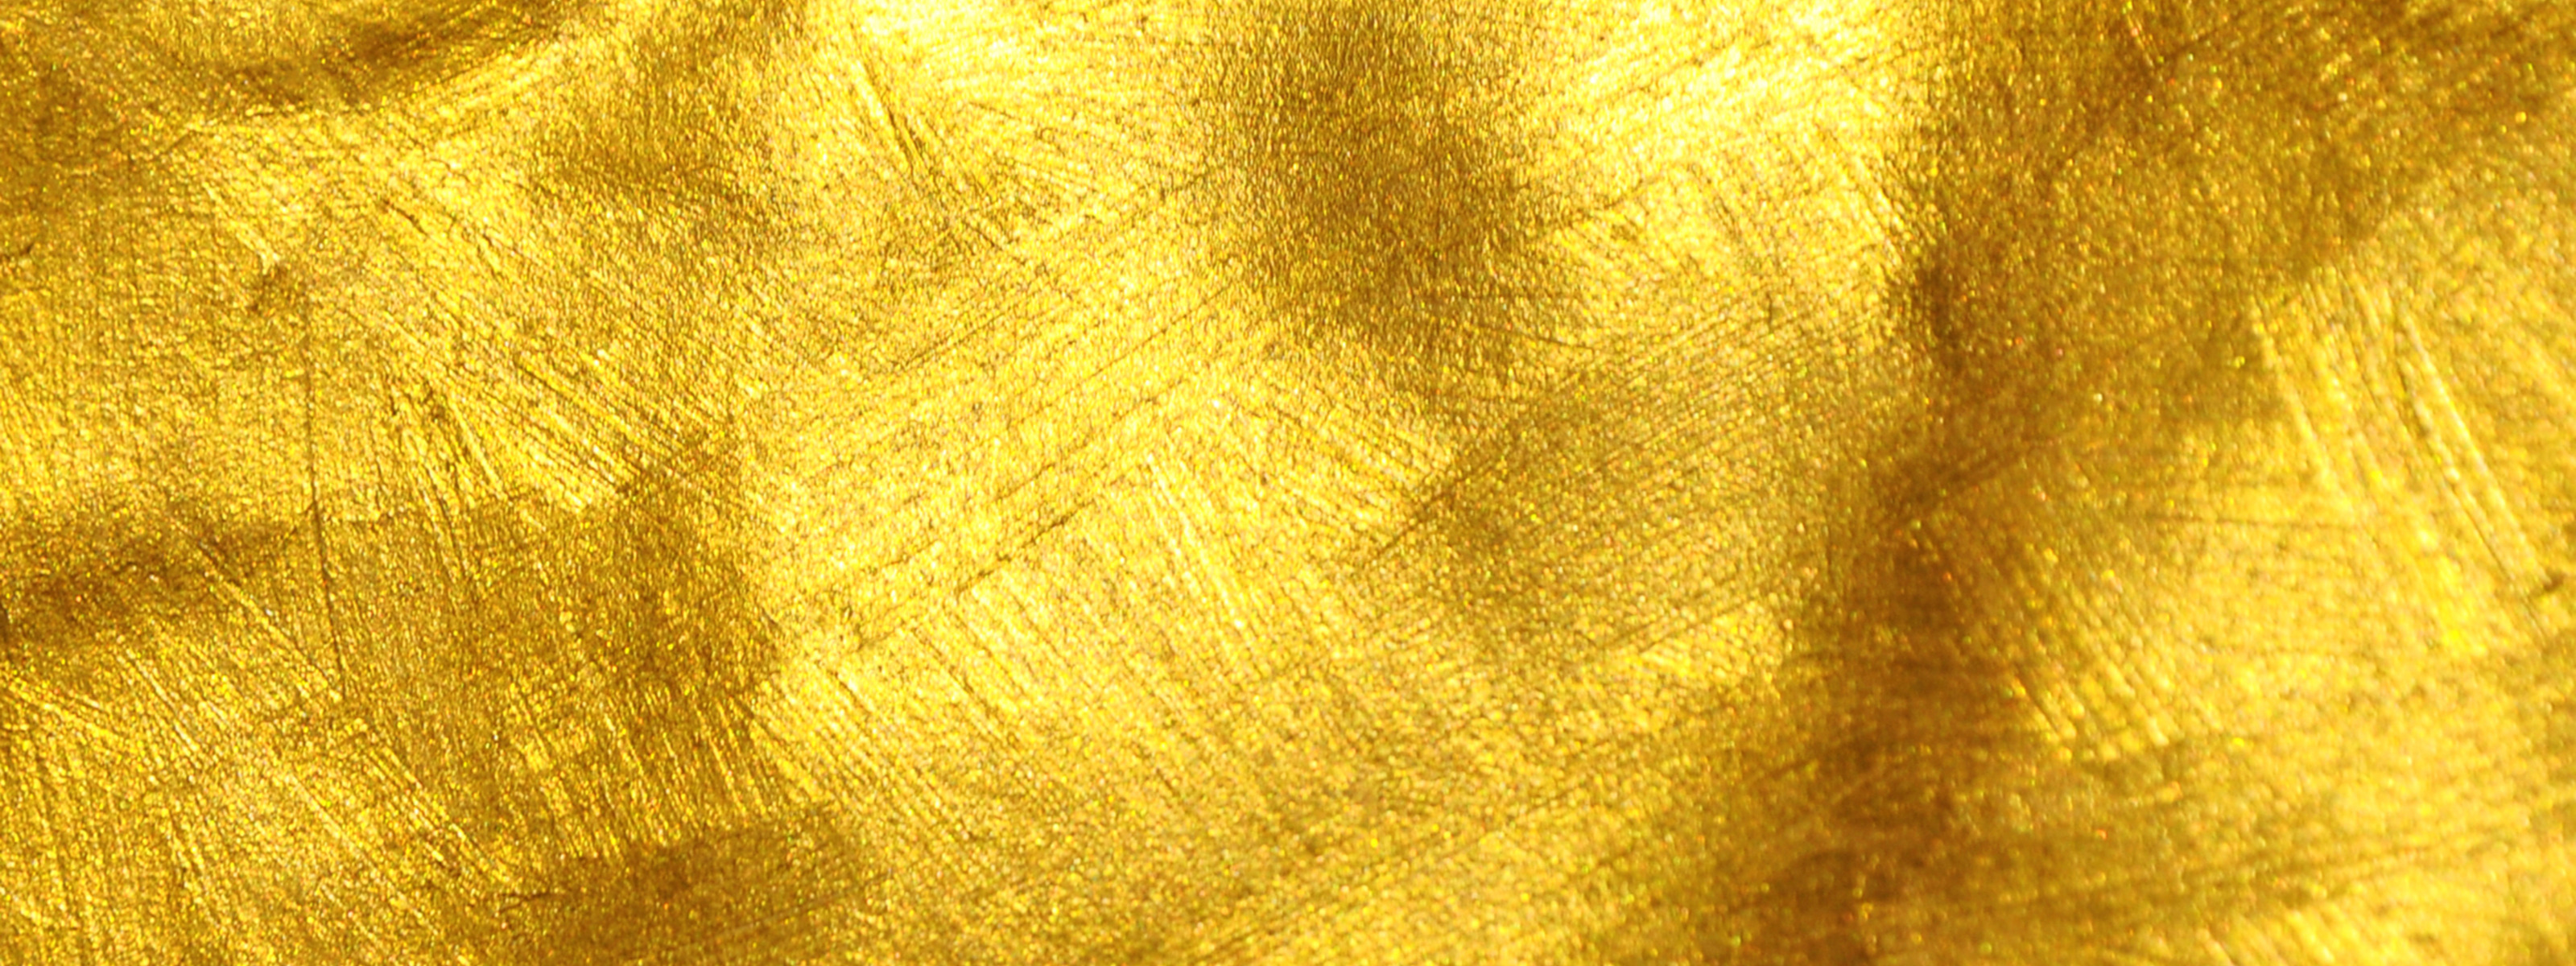 Material effect. Золото металлик d2111. Золото текстура. Золотистый фон. Золото материал.